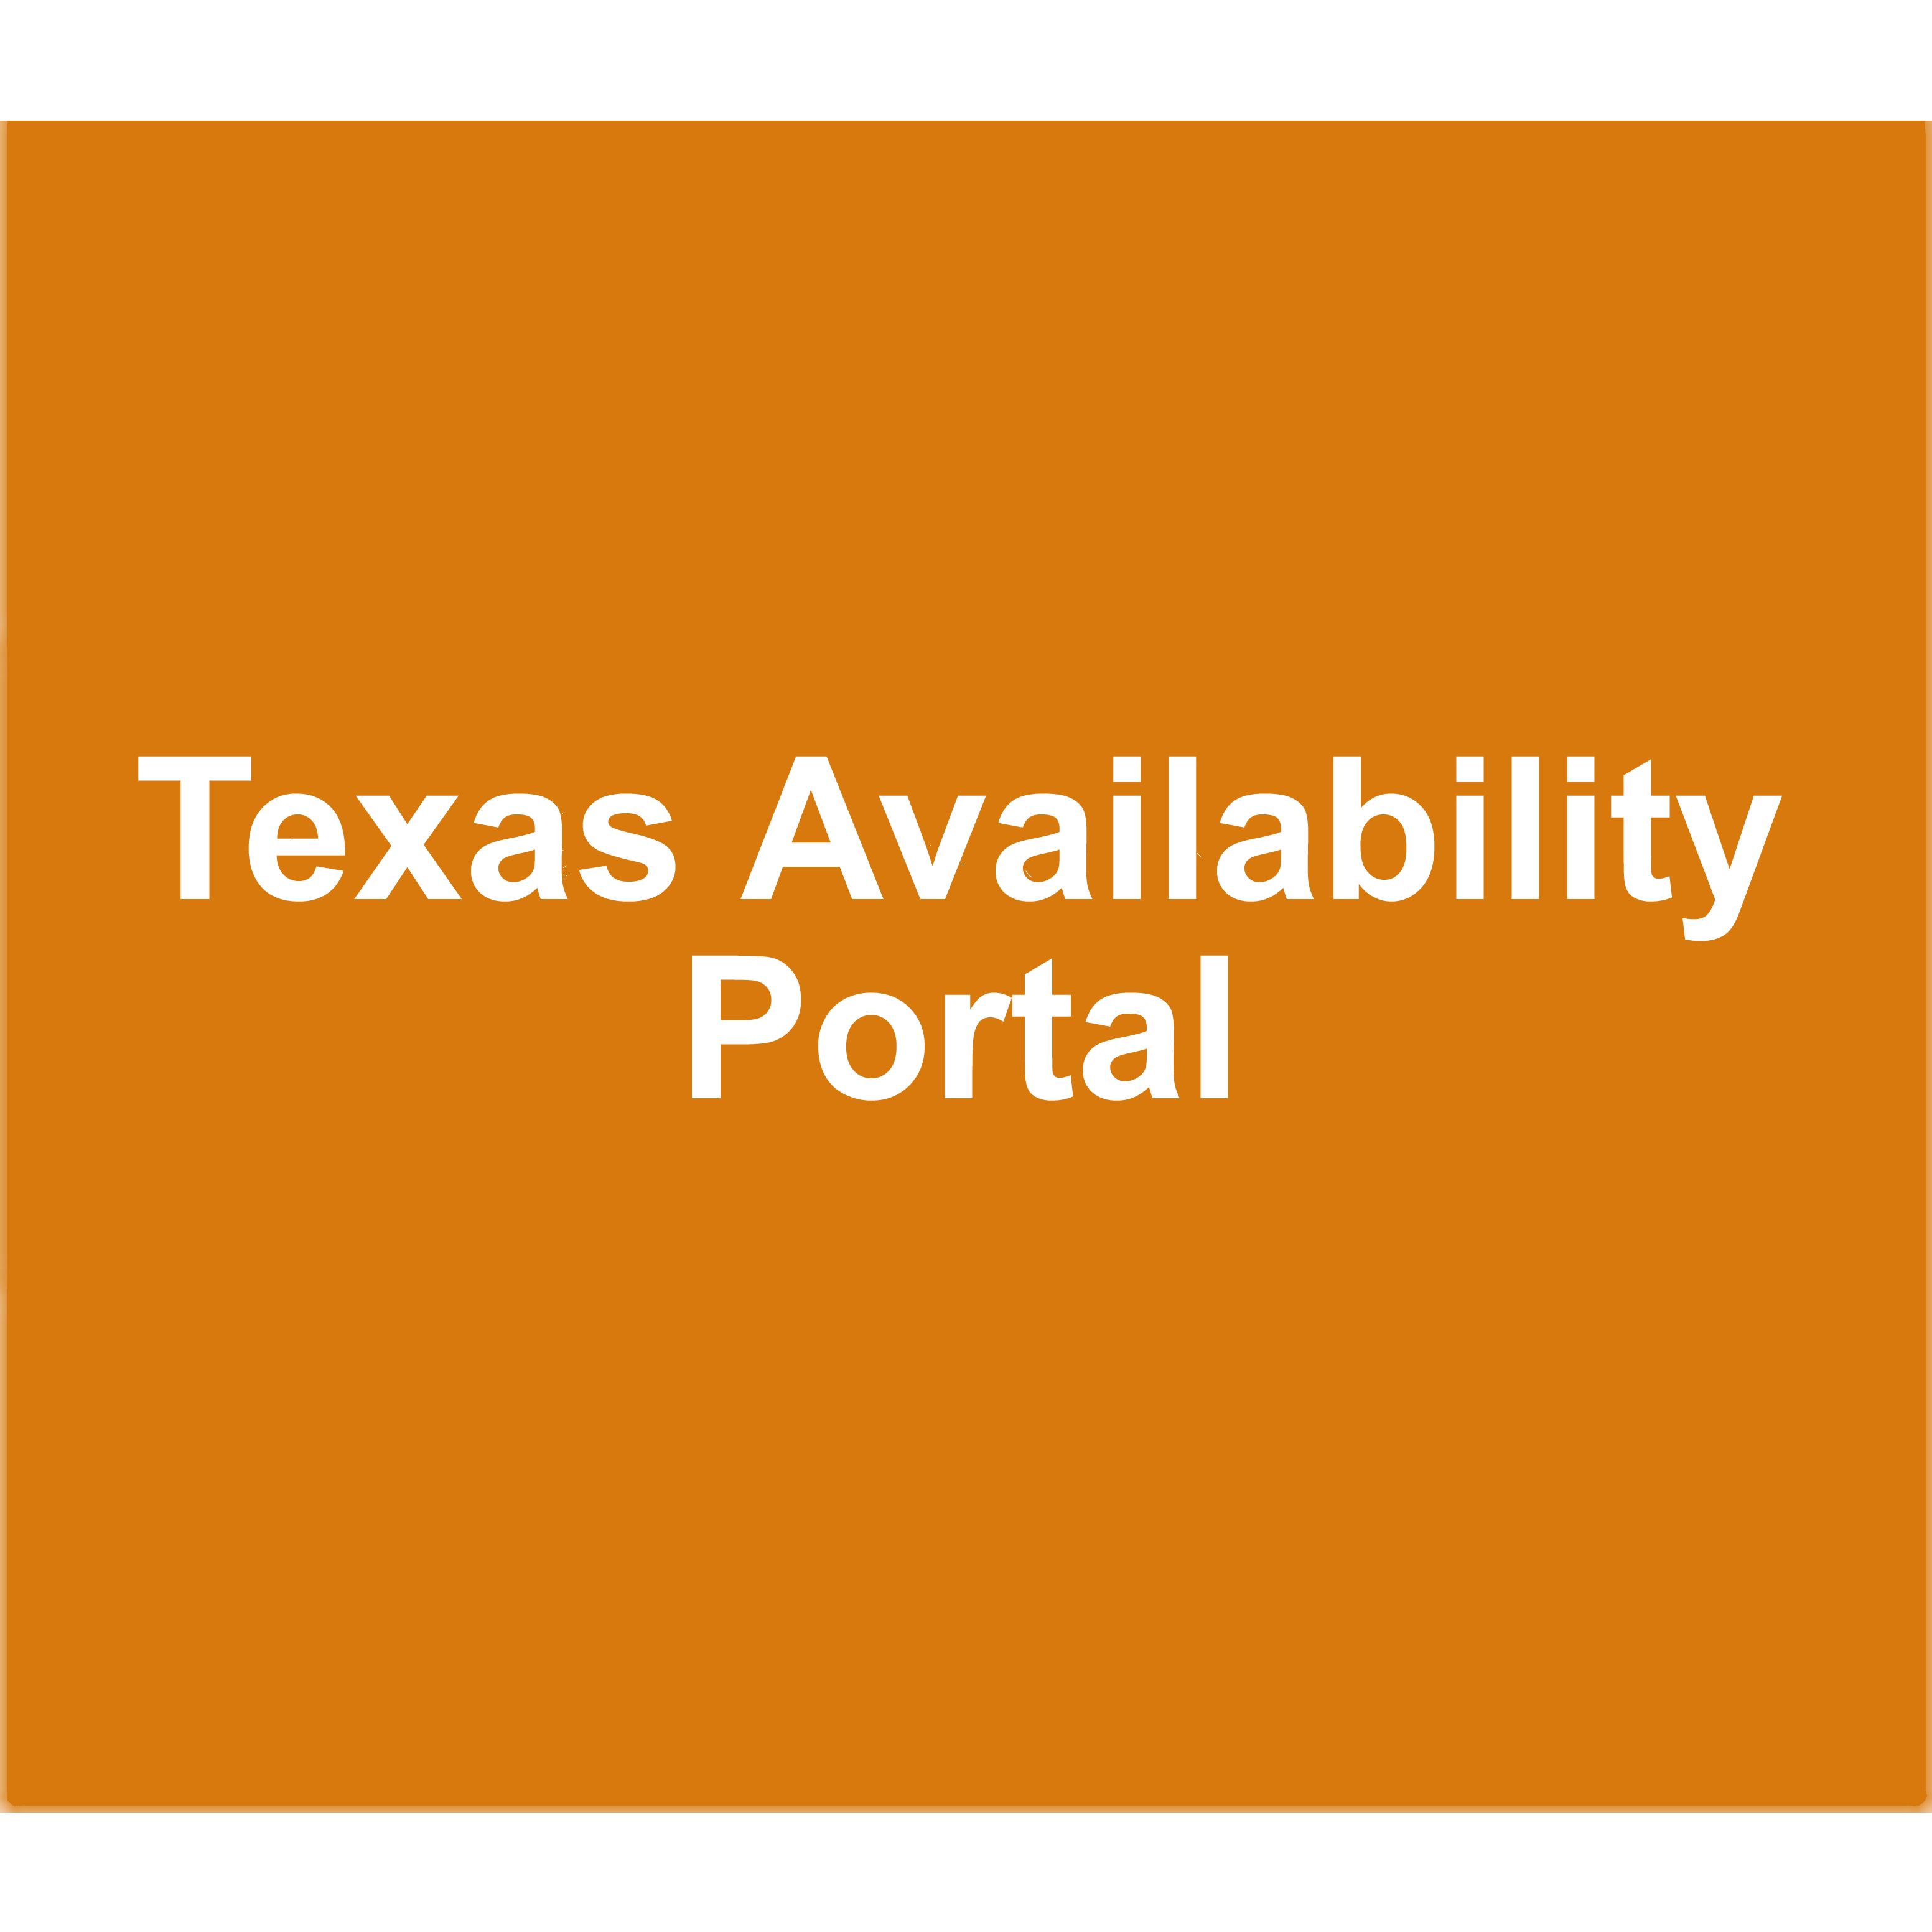 Texas Availiability Portal